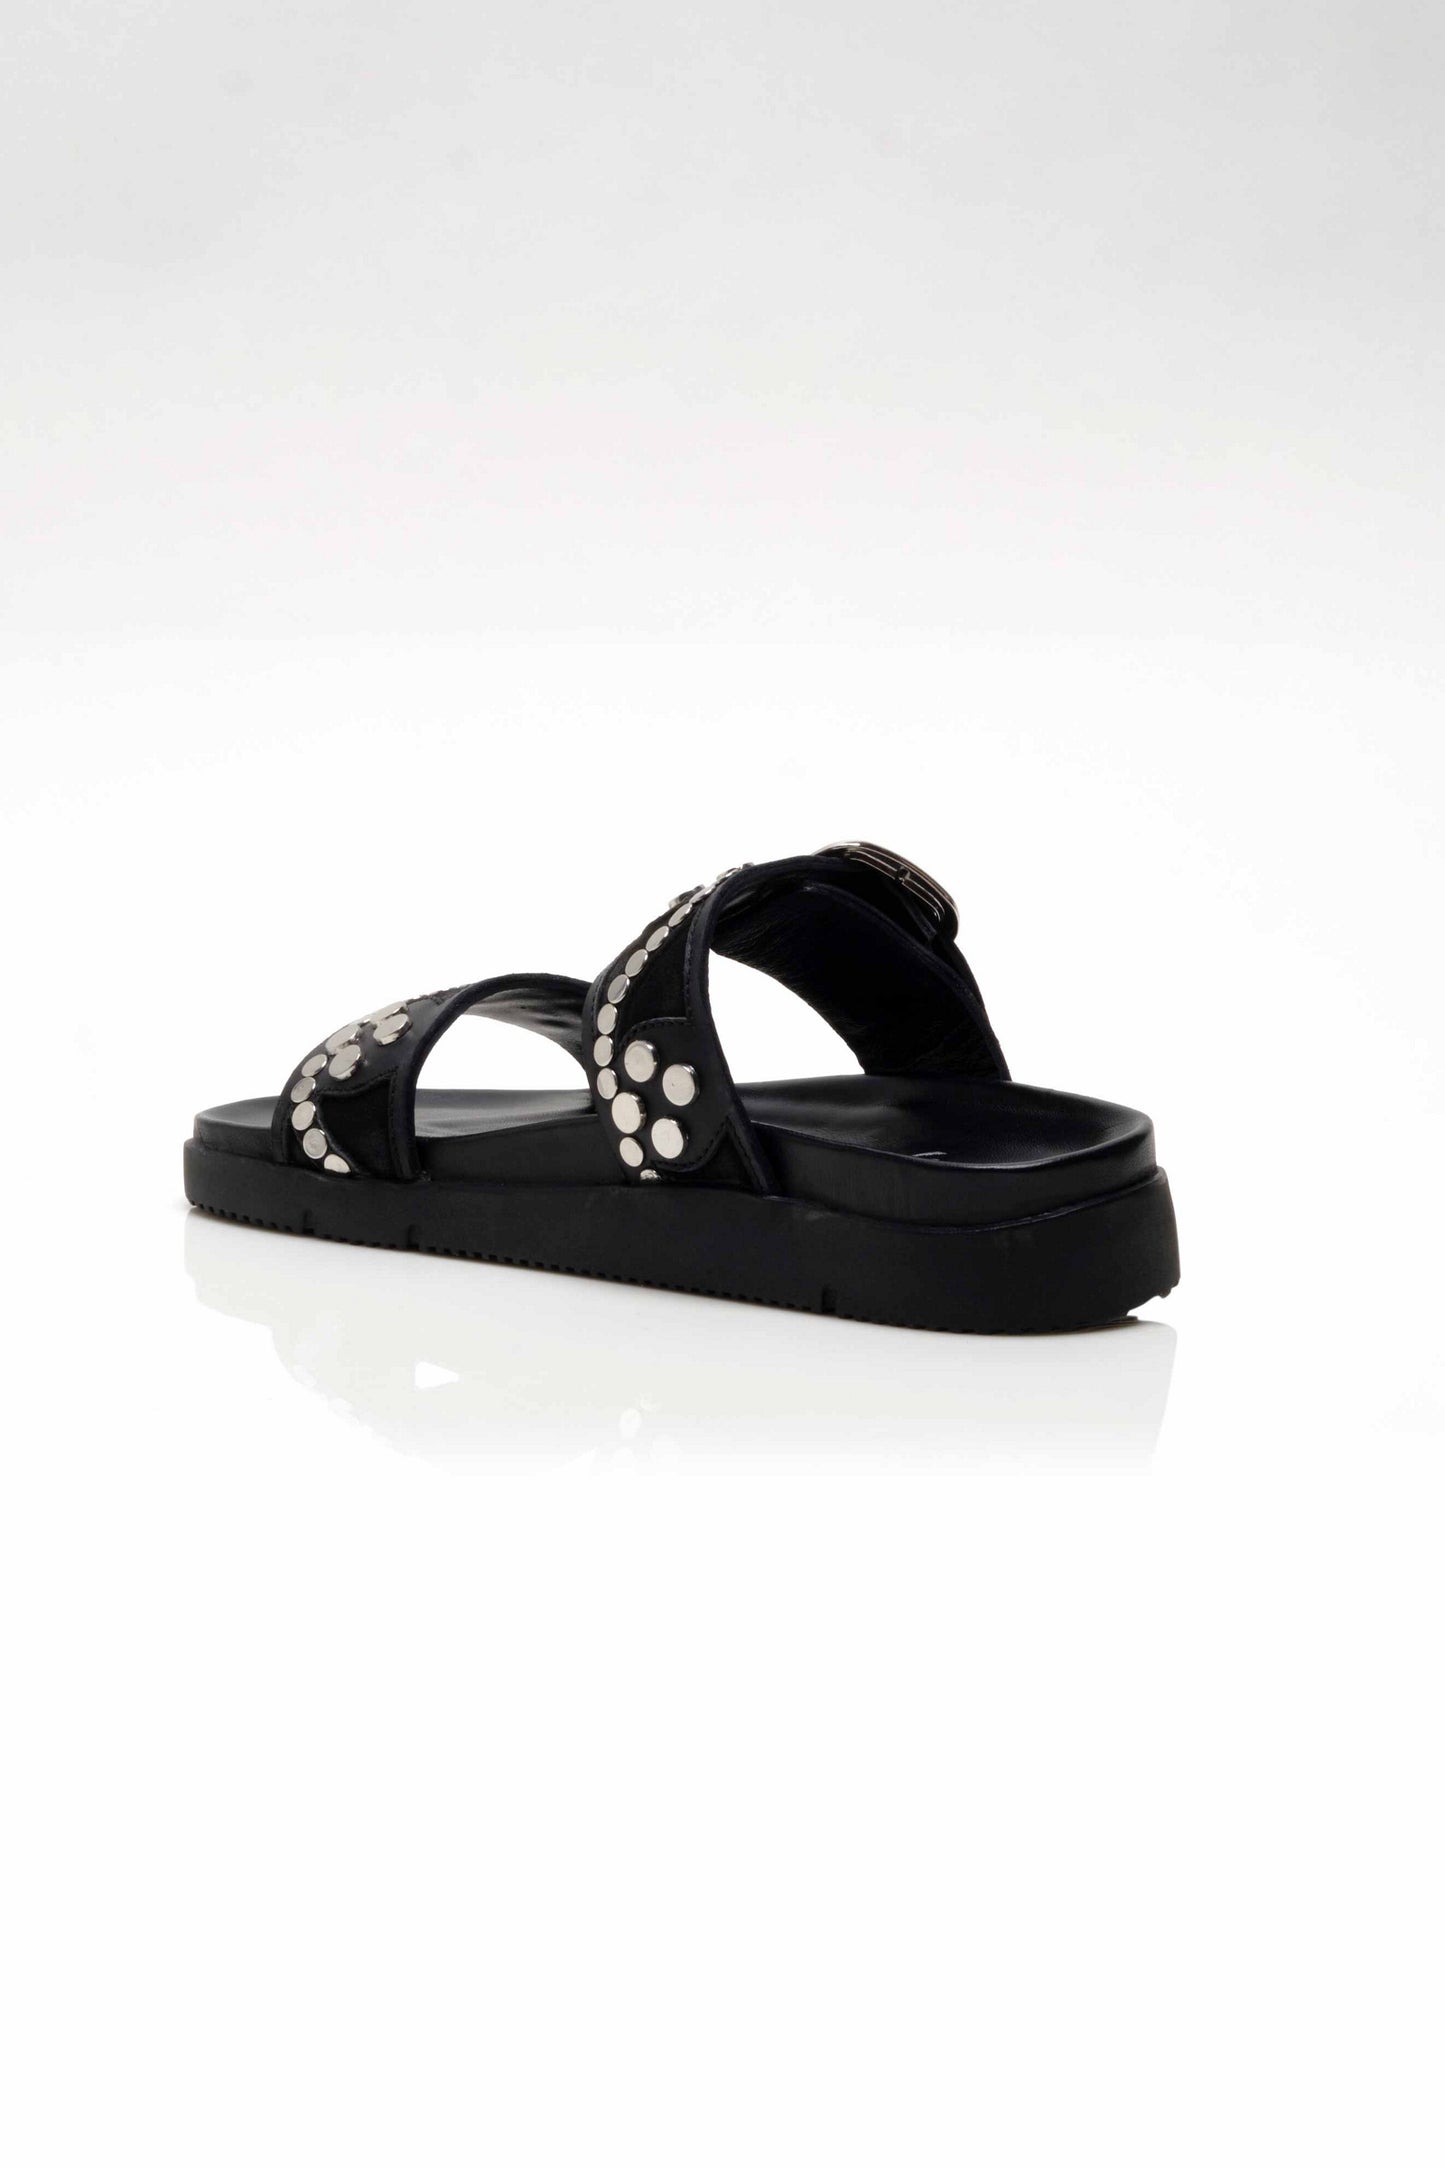 Revelry Studded Sandal - Black